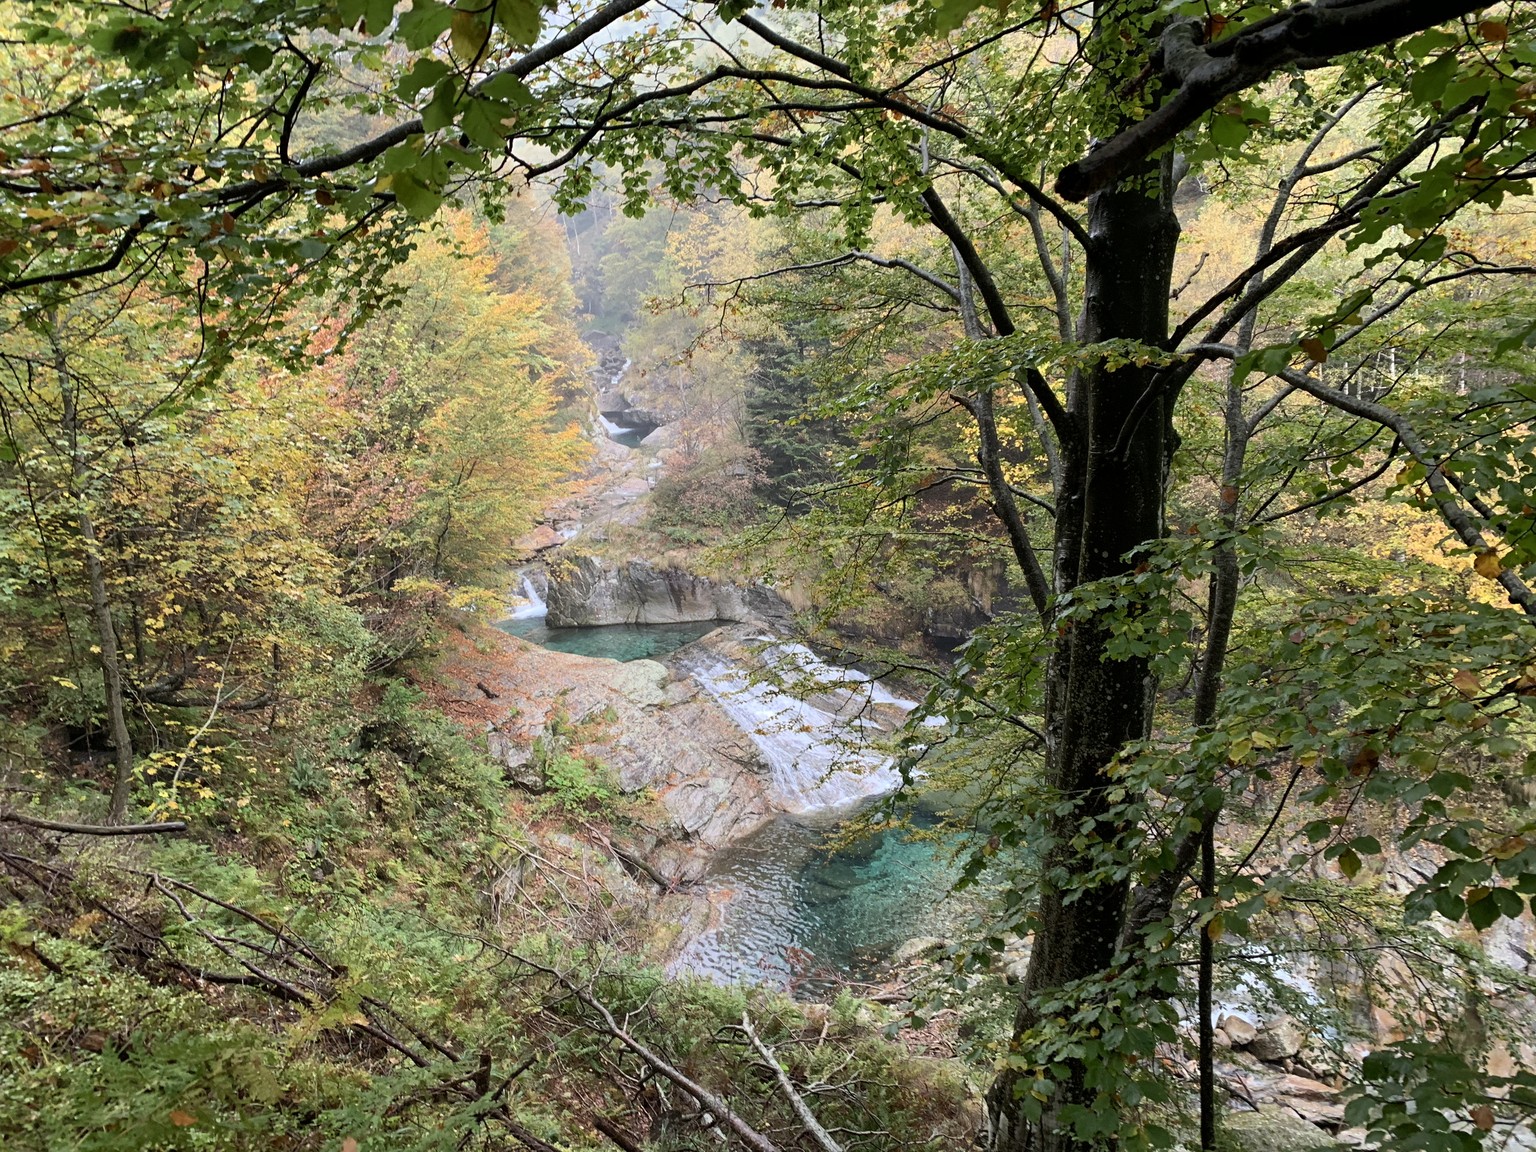 Geheimtipp: Von Brione aus das Val d'Osura hinaufwandern, immer dem Flüsschen folgend. Dabei gibt's viele herrlich smaragdgrüne Steinbecken, «Pozzi» genannt, zu entdecken.